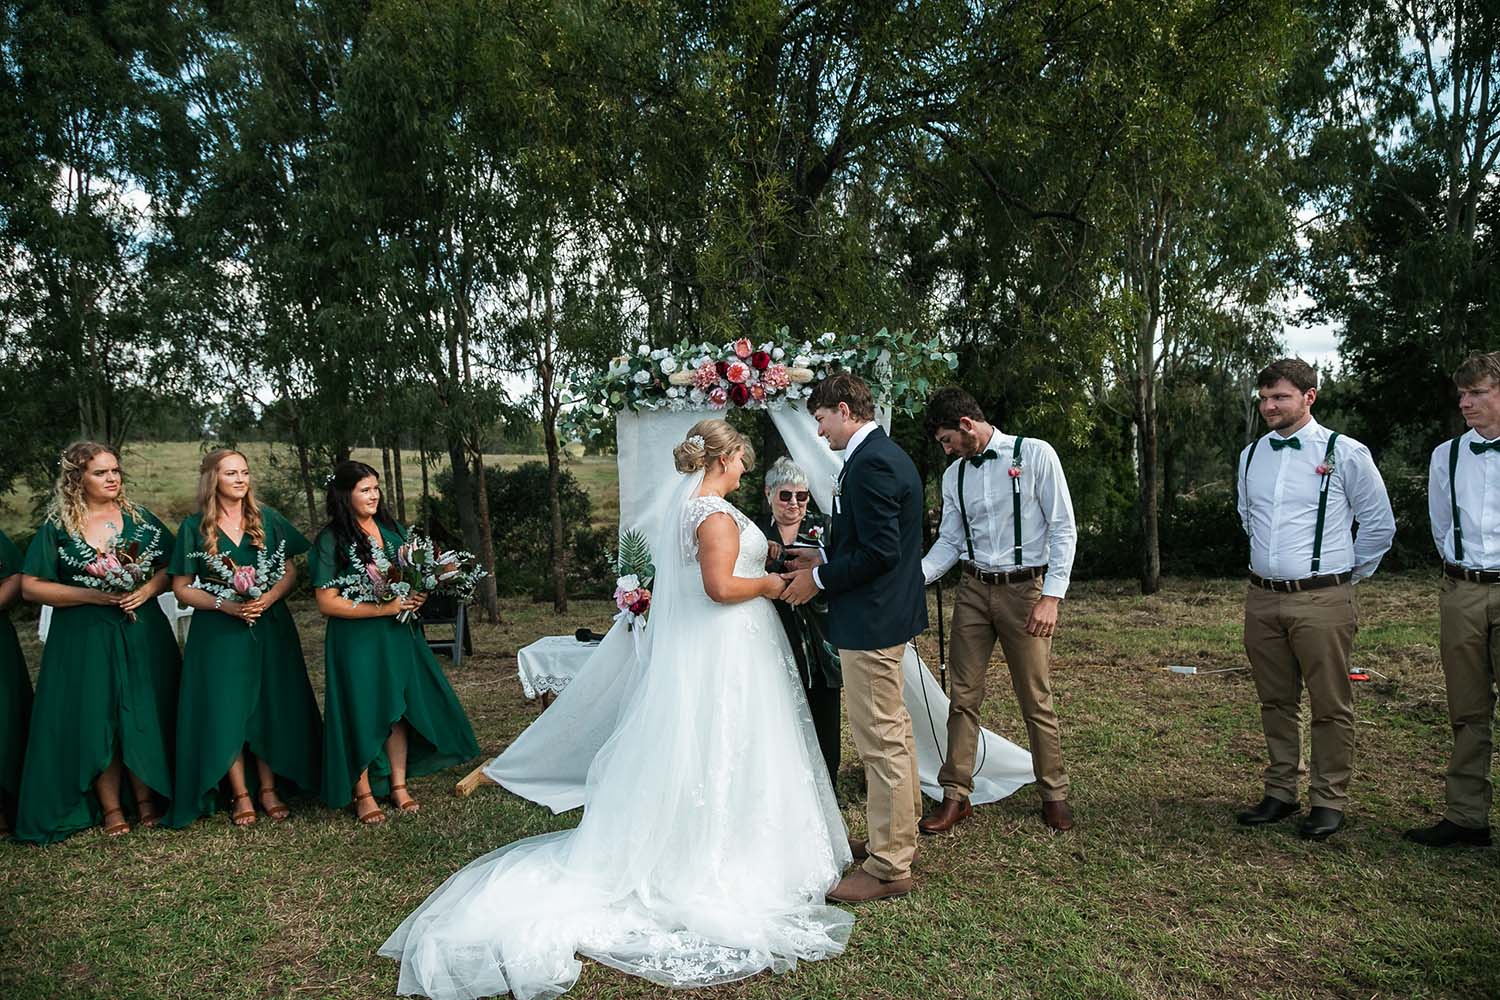 Wedding Photography - ceremony